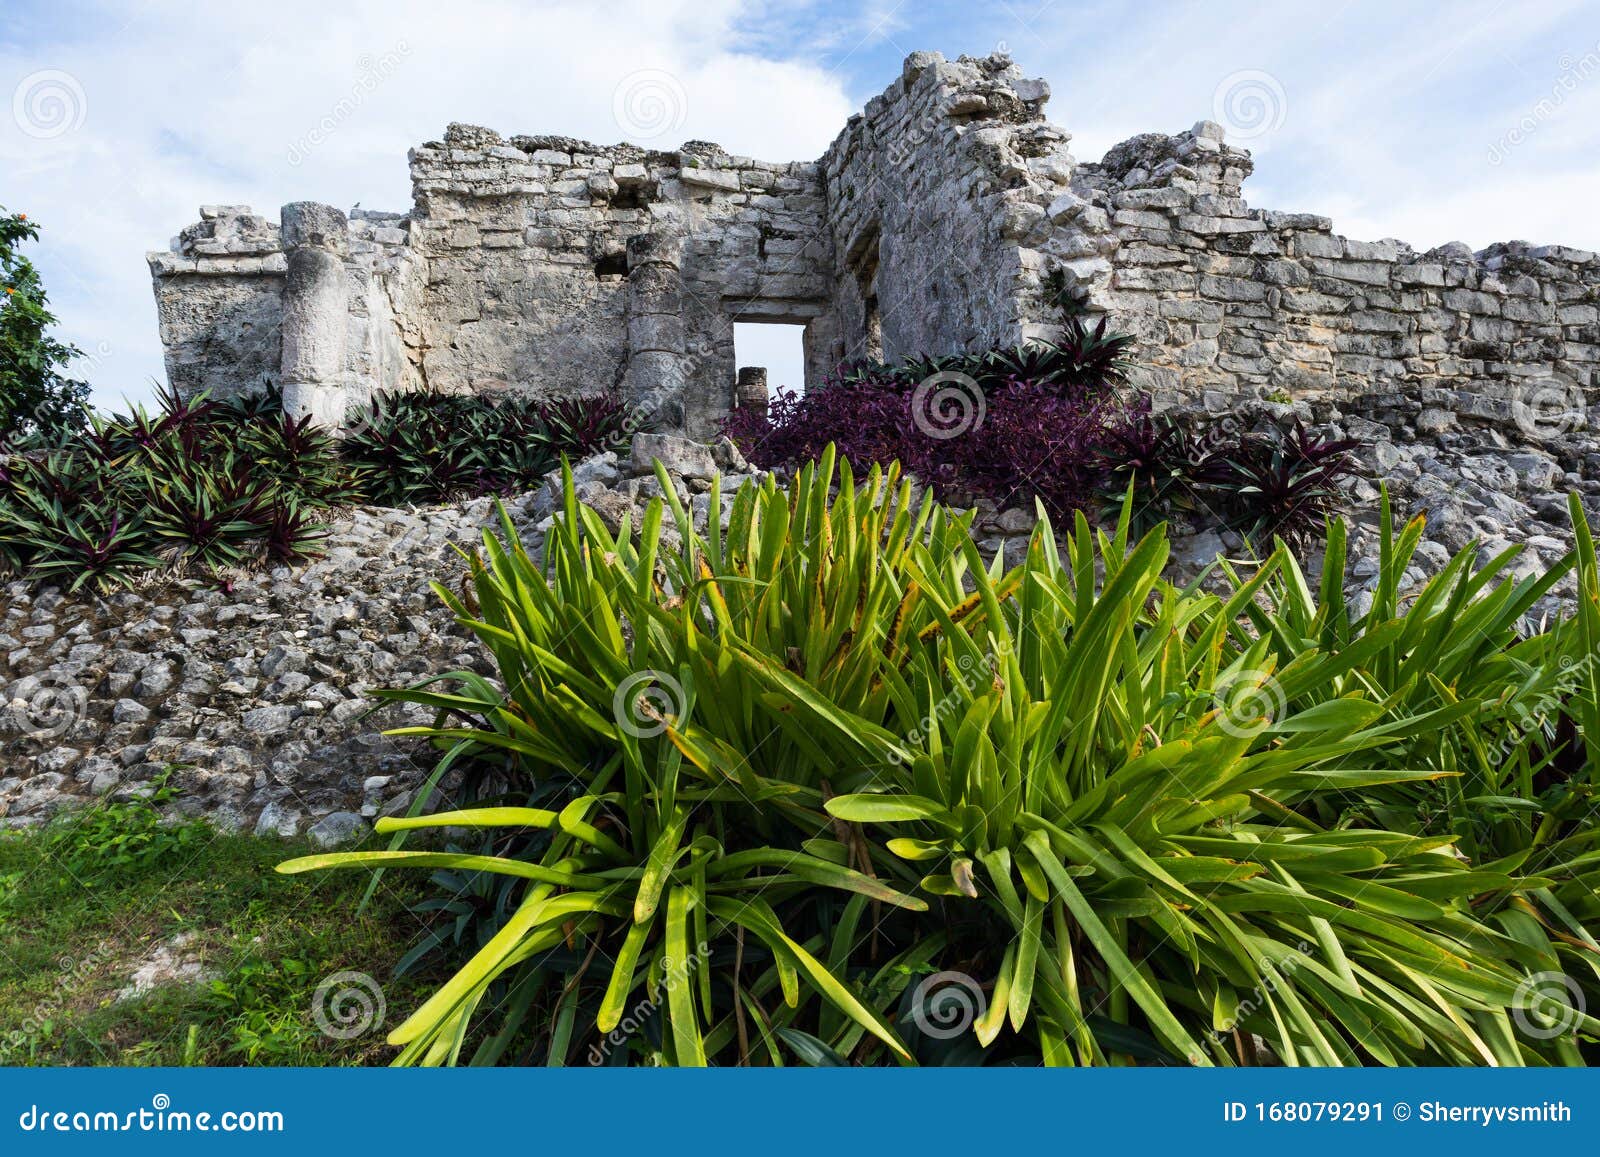 tulum mayan ruins with the casa de las columnas building